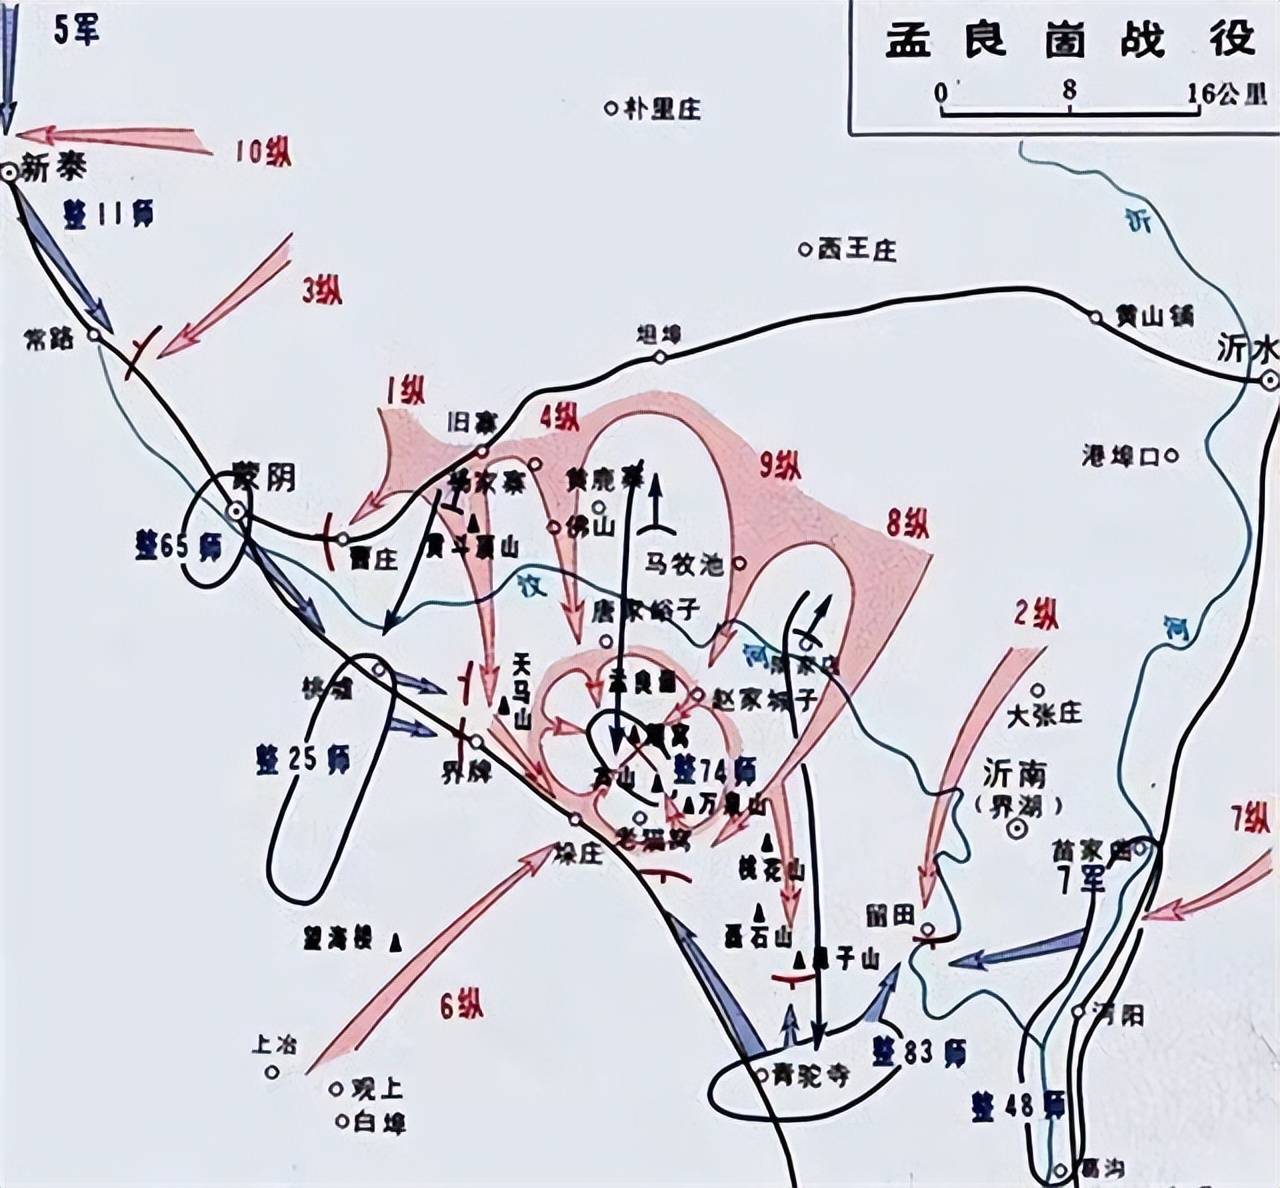 粟裕竟然从一开始的目标就是要打掉七十四师,可能是莱芜战役全歼